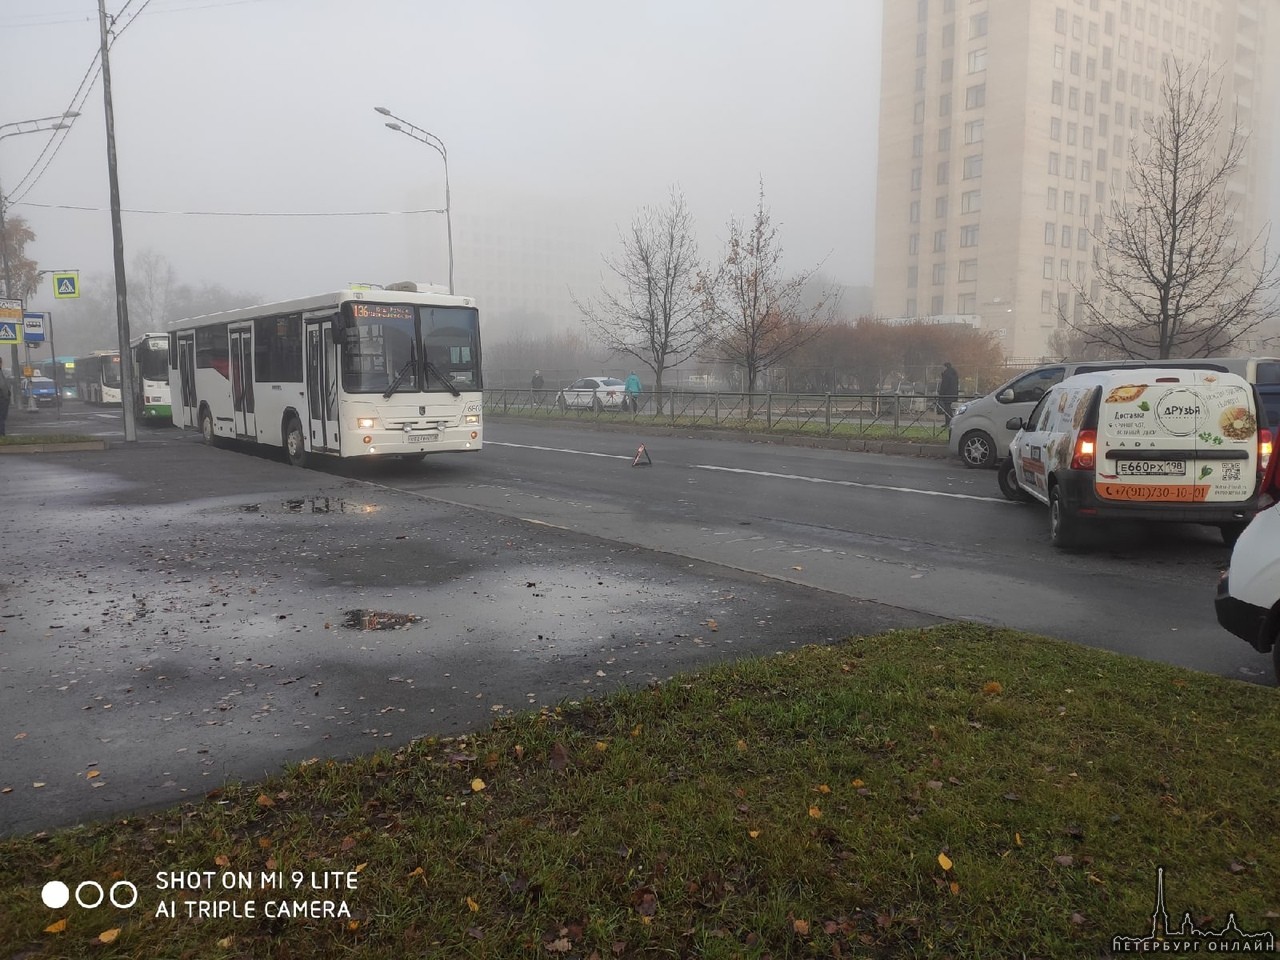 На Бестужевской улице из-за аварии а ерекрыто движение в обе стороны. Все автобусы стоят в пробке.